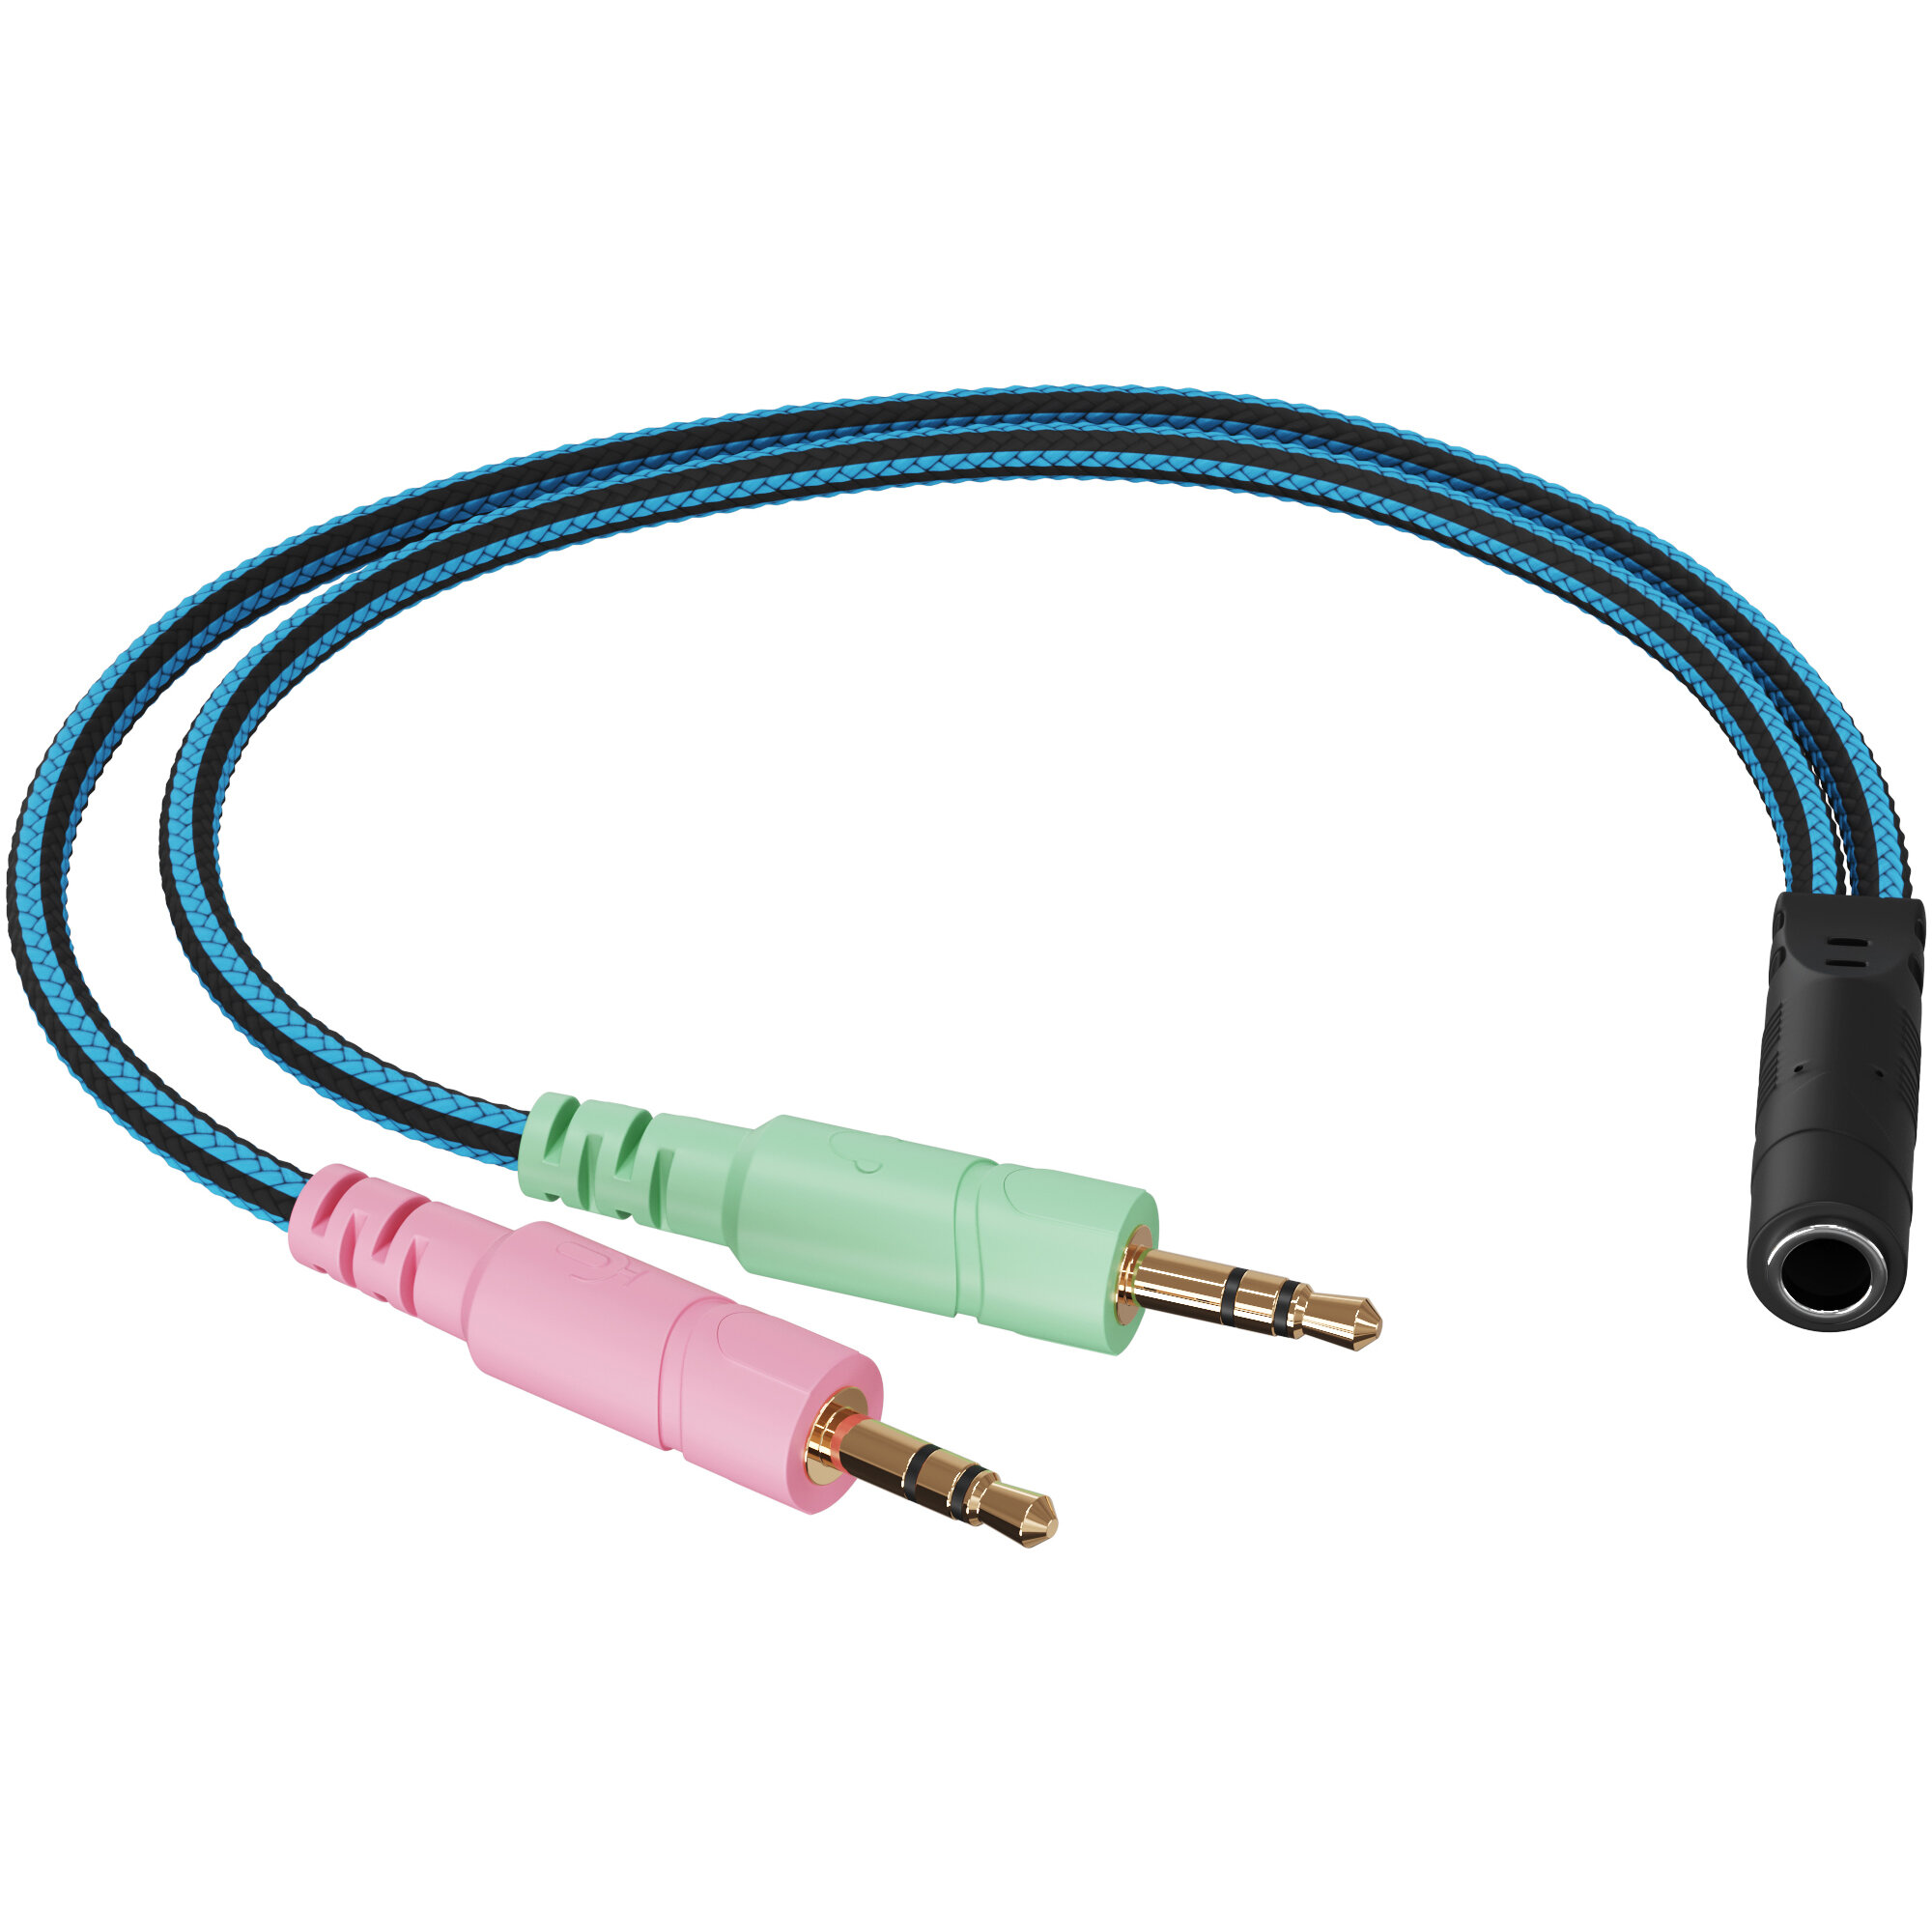 Аудио-разветвитель GSMIN RT-171 переходник на микрофон и наушники Mini Jack 3.5 мм (F) - Mini Jack 3.5 мм (M) + MIC 3.5 мм (M) (Синий)